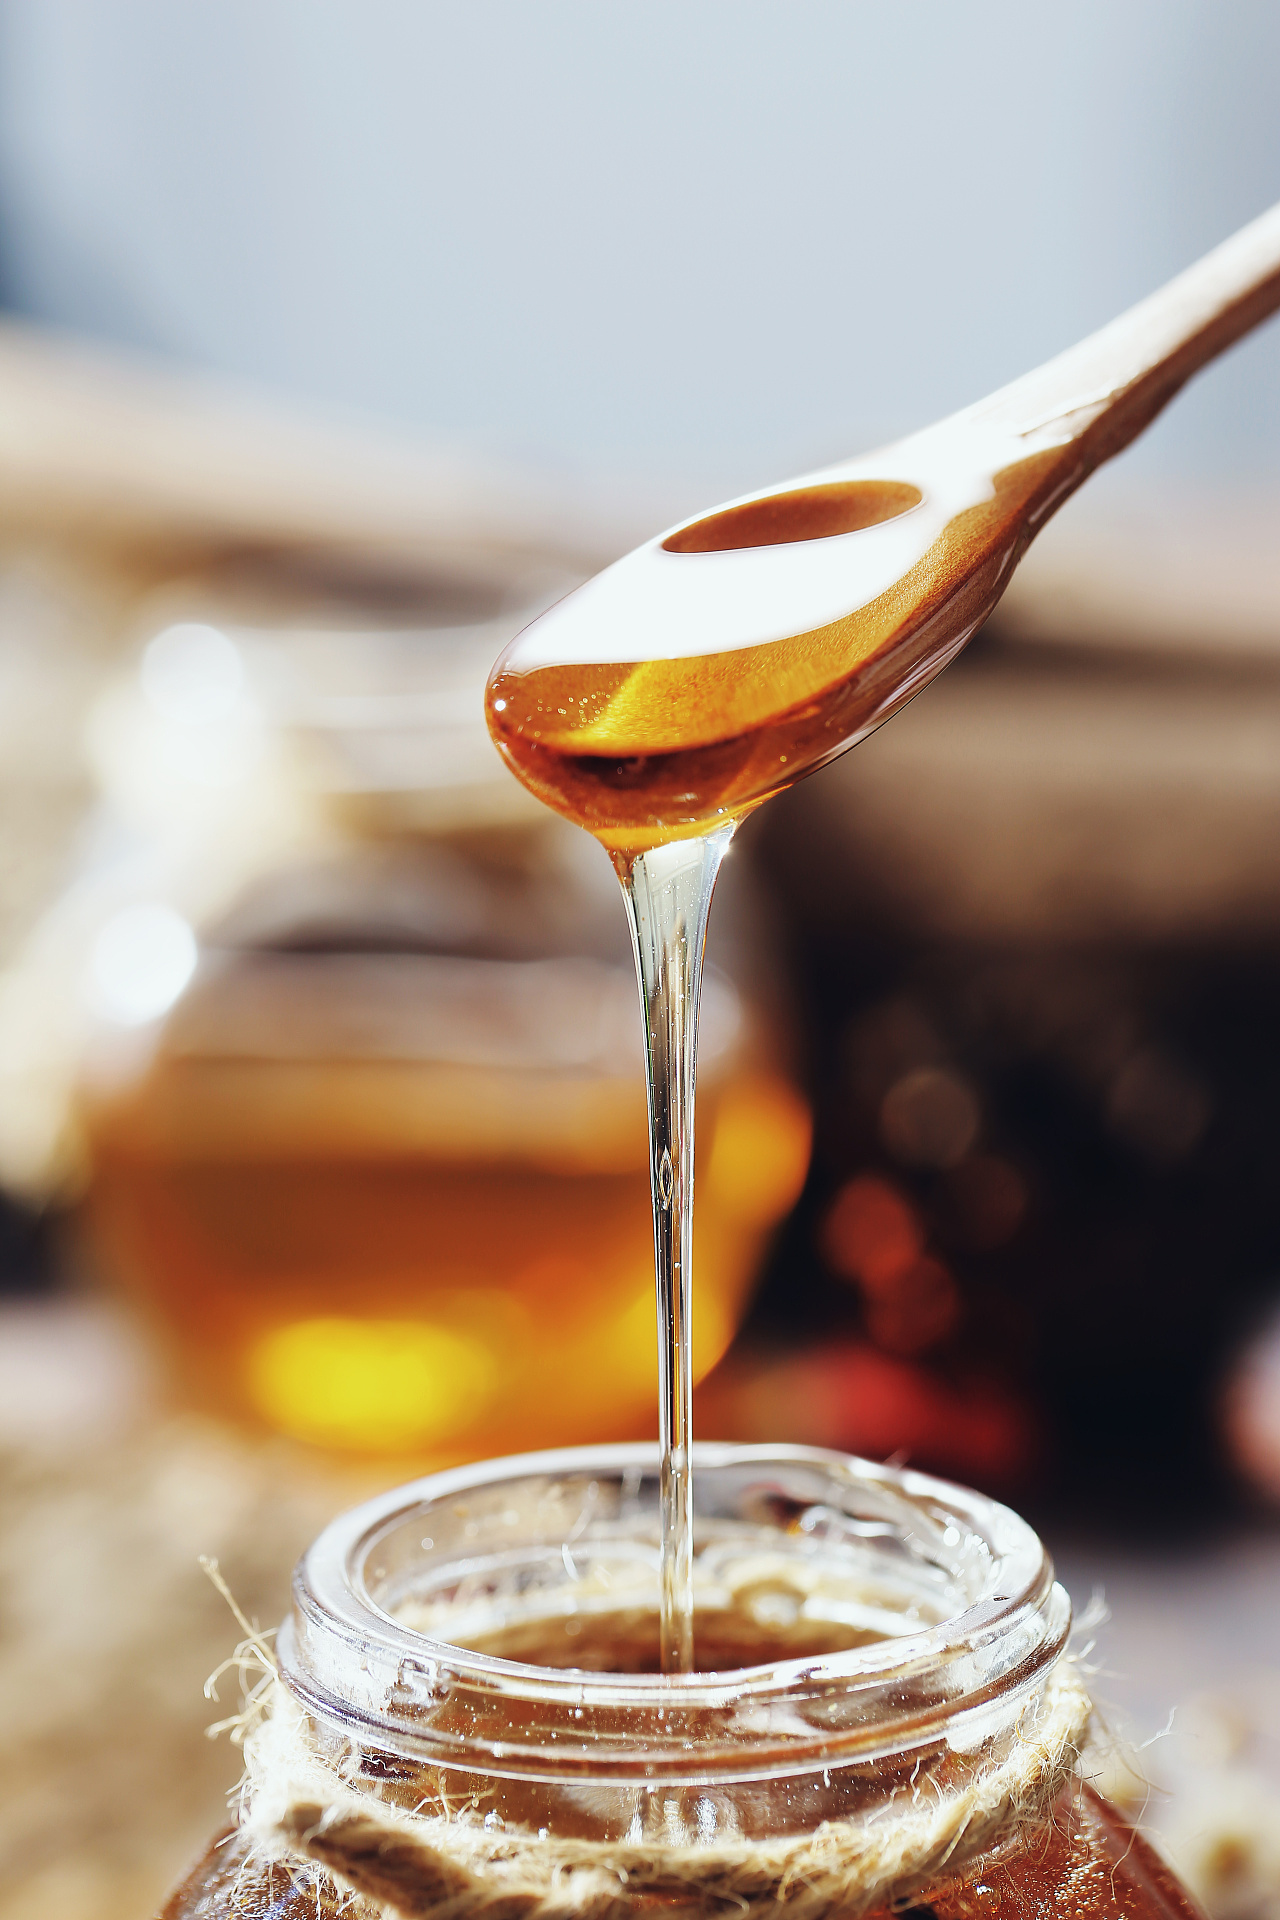 姜、薄菏和蜂蜜在白色背景 库存图片. 图片 包括有 健康, 空白, 蜂蜜, 饮料, 流感, 自然, 片式 - 77753163